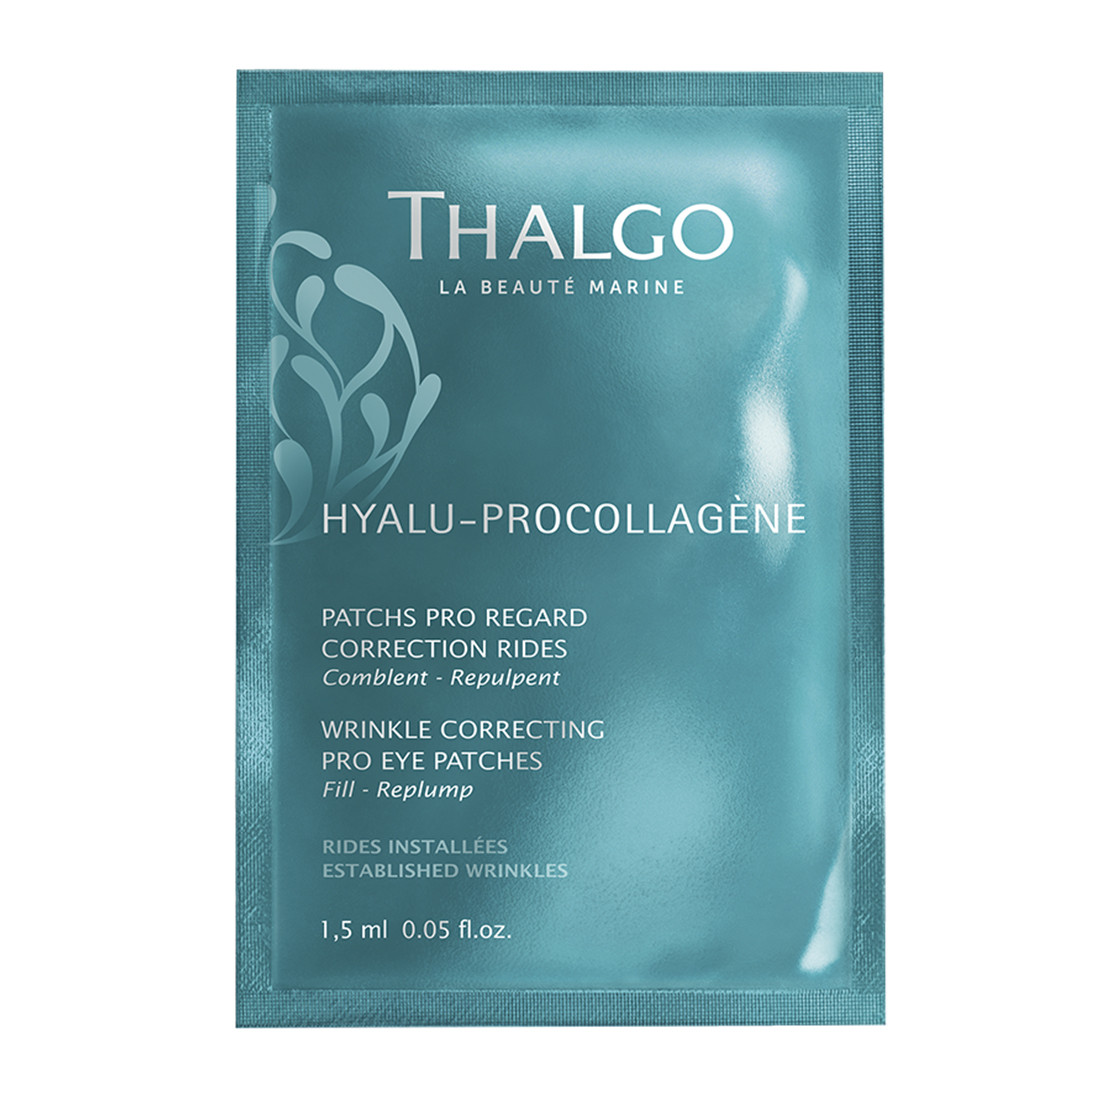 Патчи Корректор морщин Thalgo Hyalu-Procollagene Wrinkle Correcting Pro Eye Patches